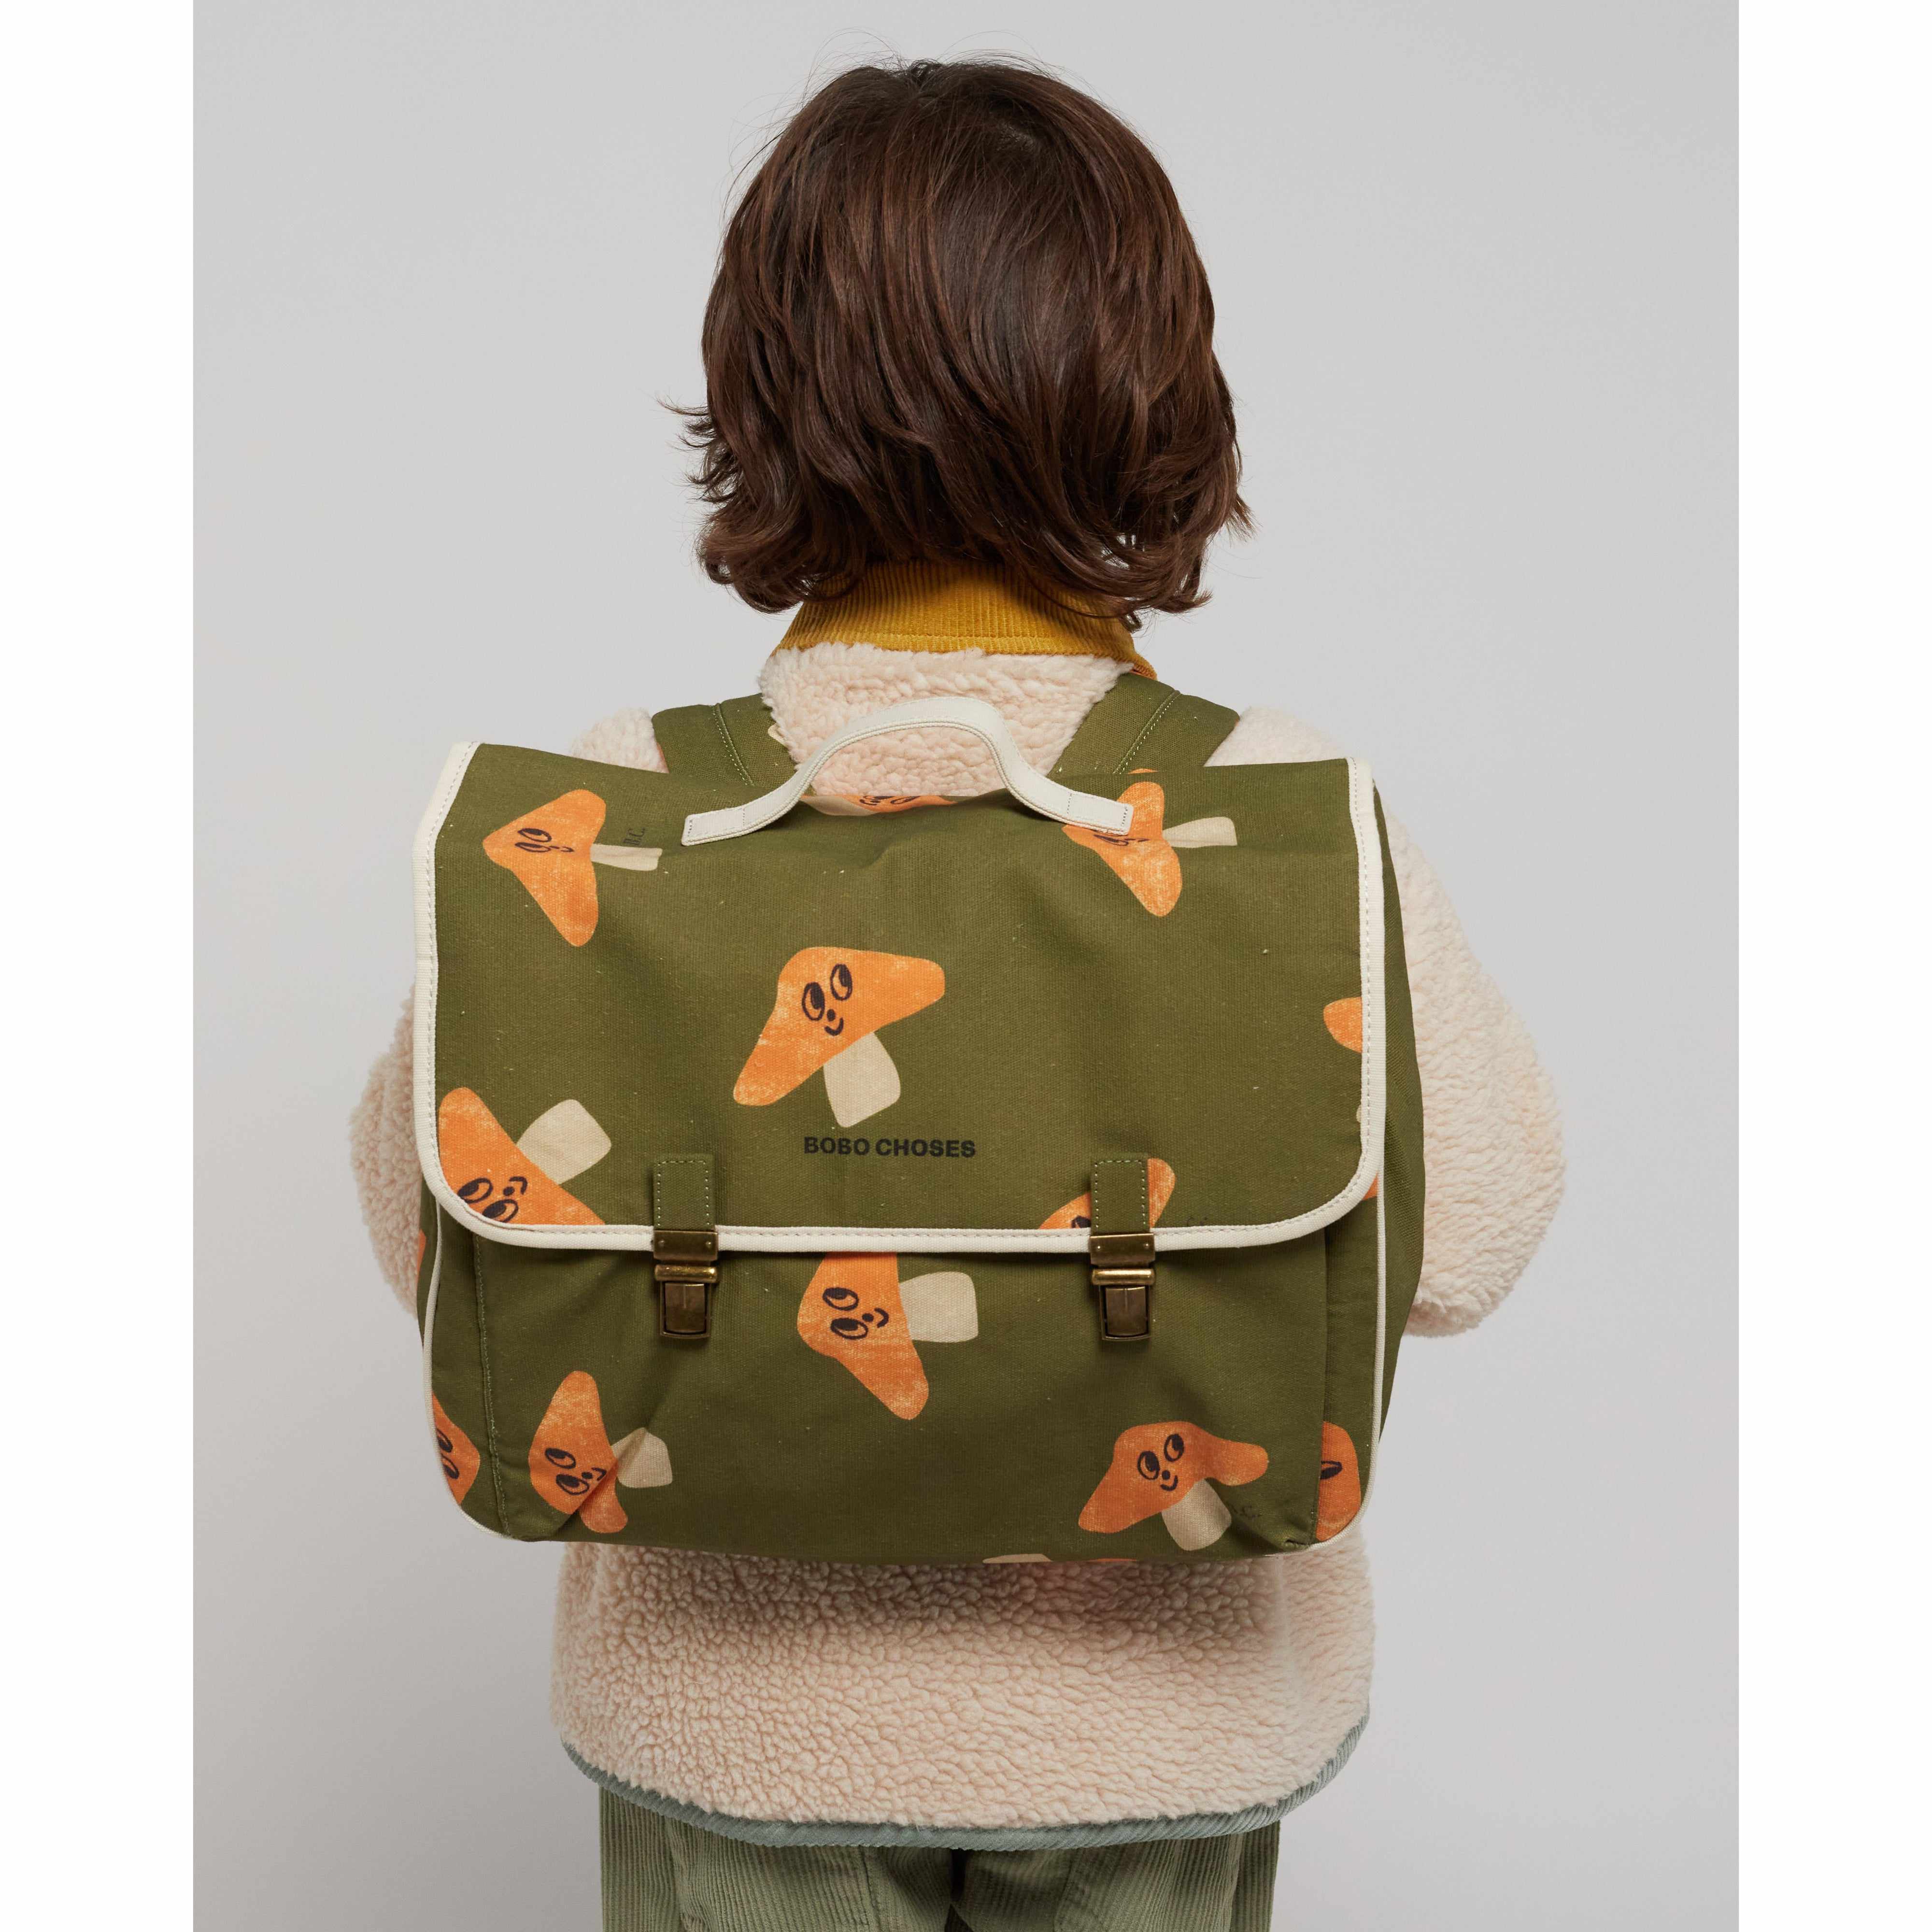 Rubber Duck schoolbag – Bobo Choses